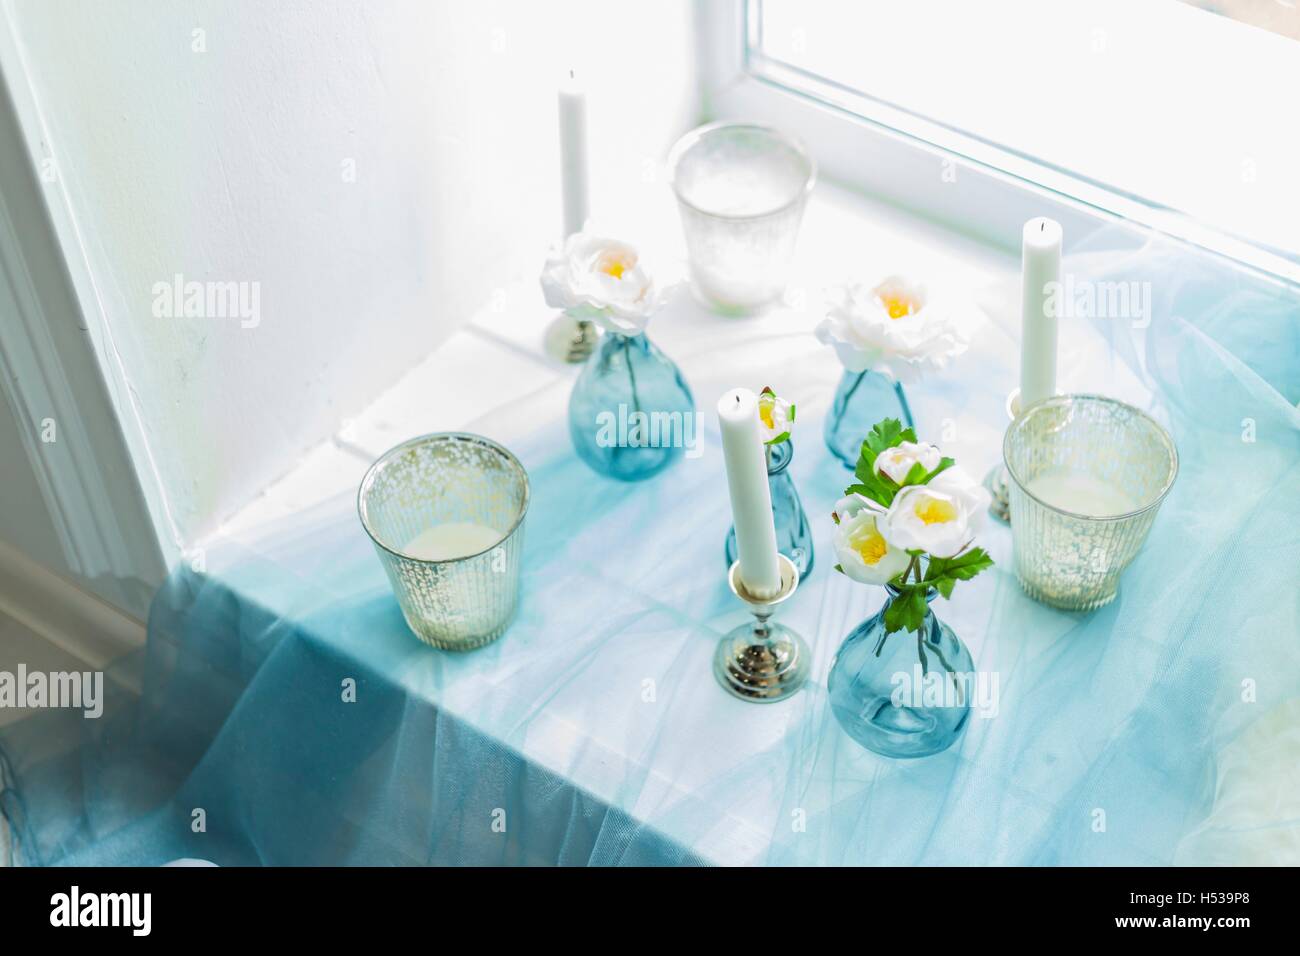 Il decor di photostudio - candele bianche, tessile blu Foto Stock